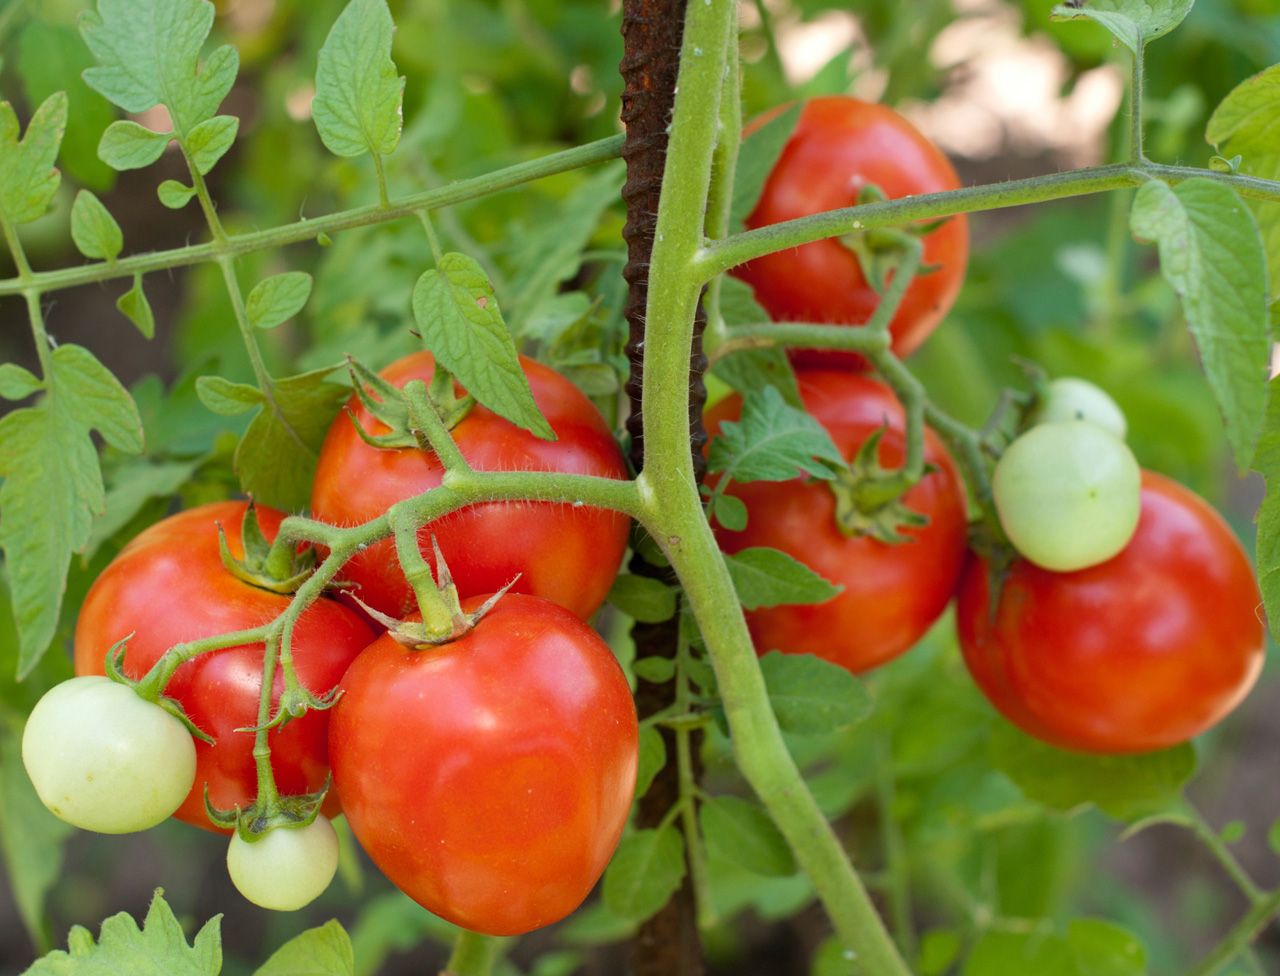 إليك الطريقة الصحيحة لزراعة الطماطم (ونباتات بطول 2 متر).